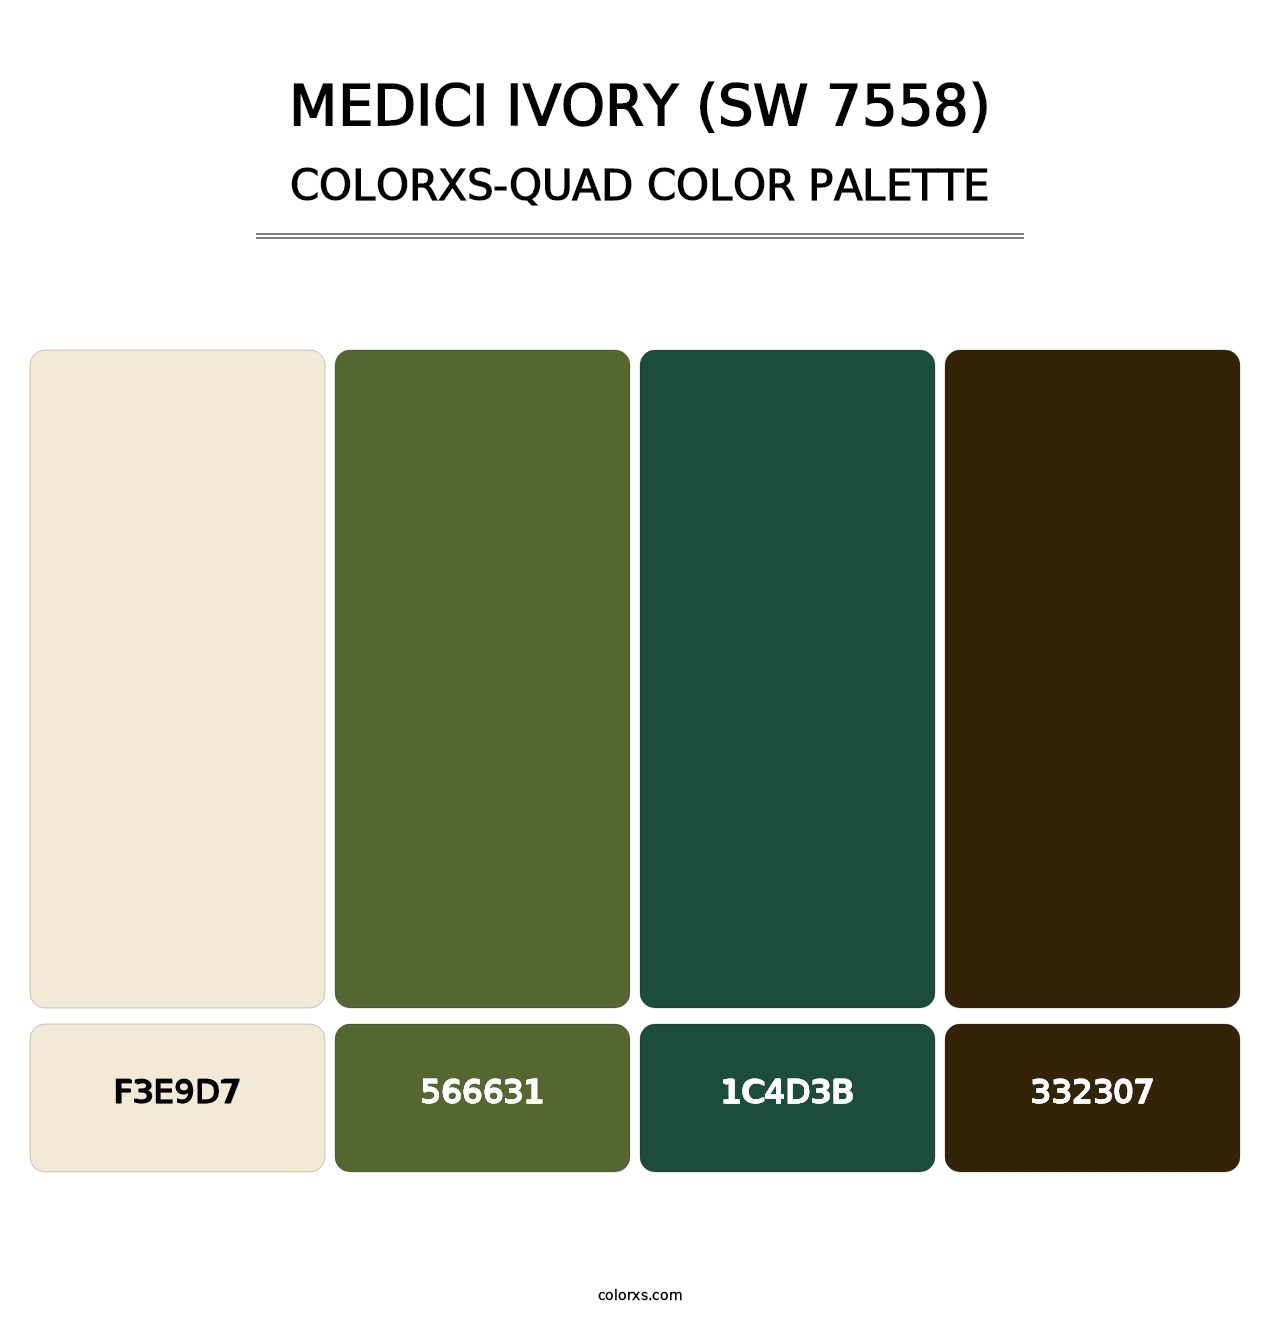 Medici Ivory (SW 7558) - Colorxs Quad Palette